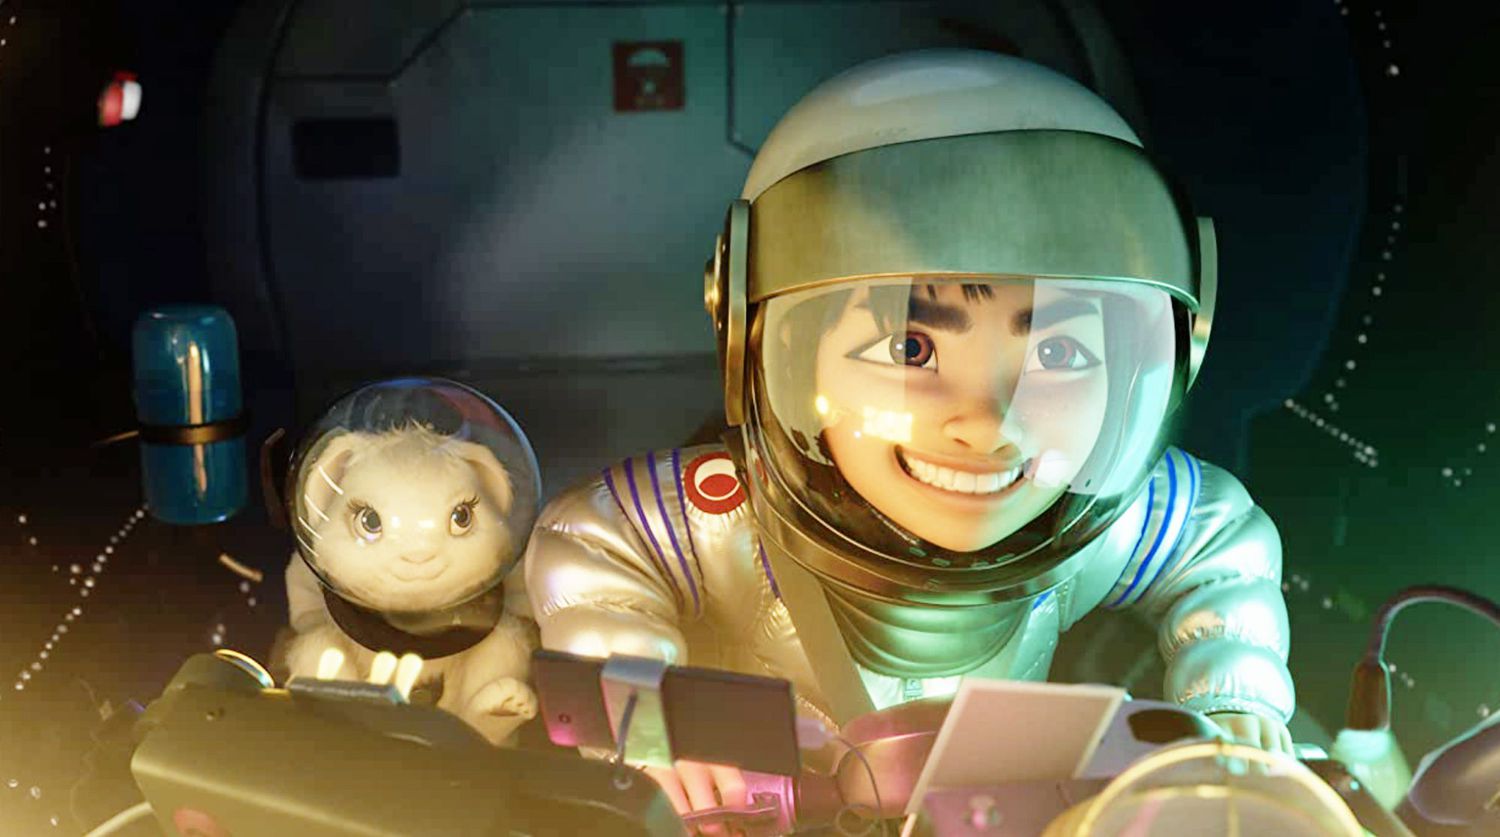 Best kids movies on netflix - Over the Moon children's movie